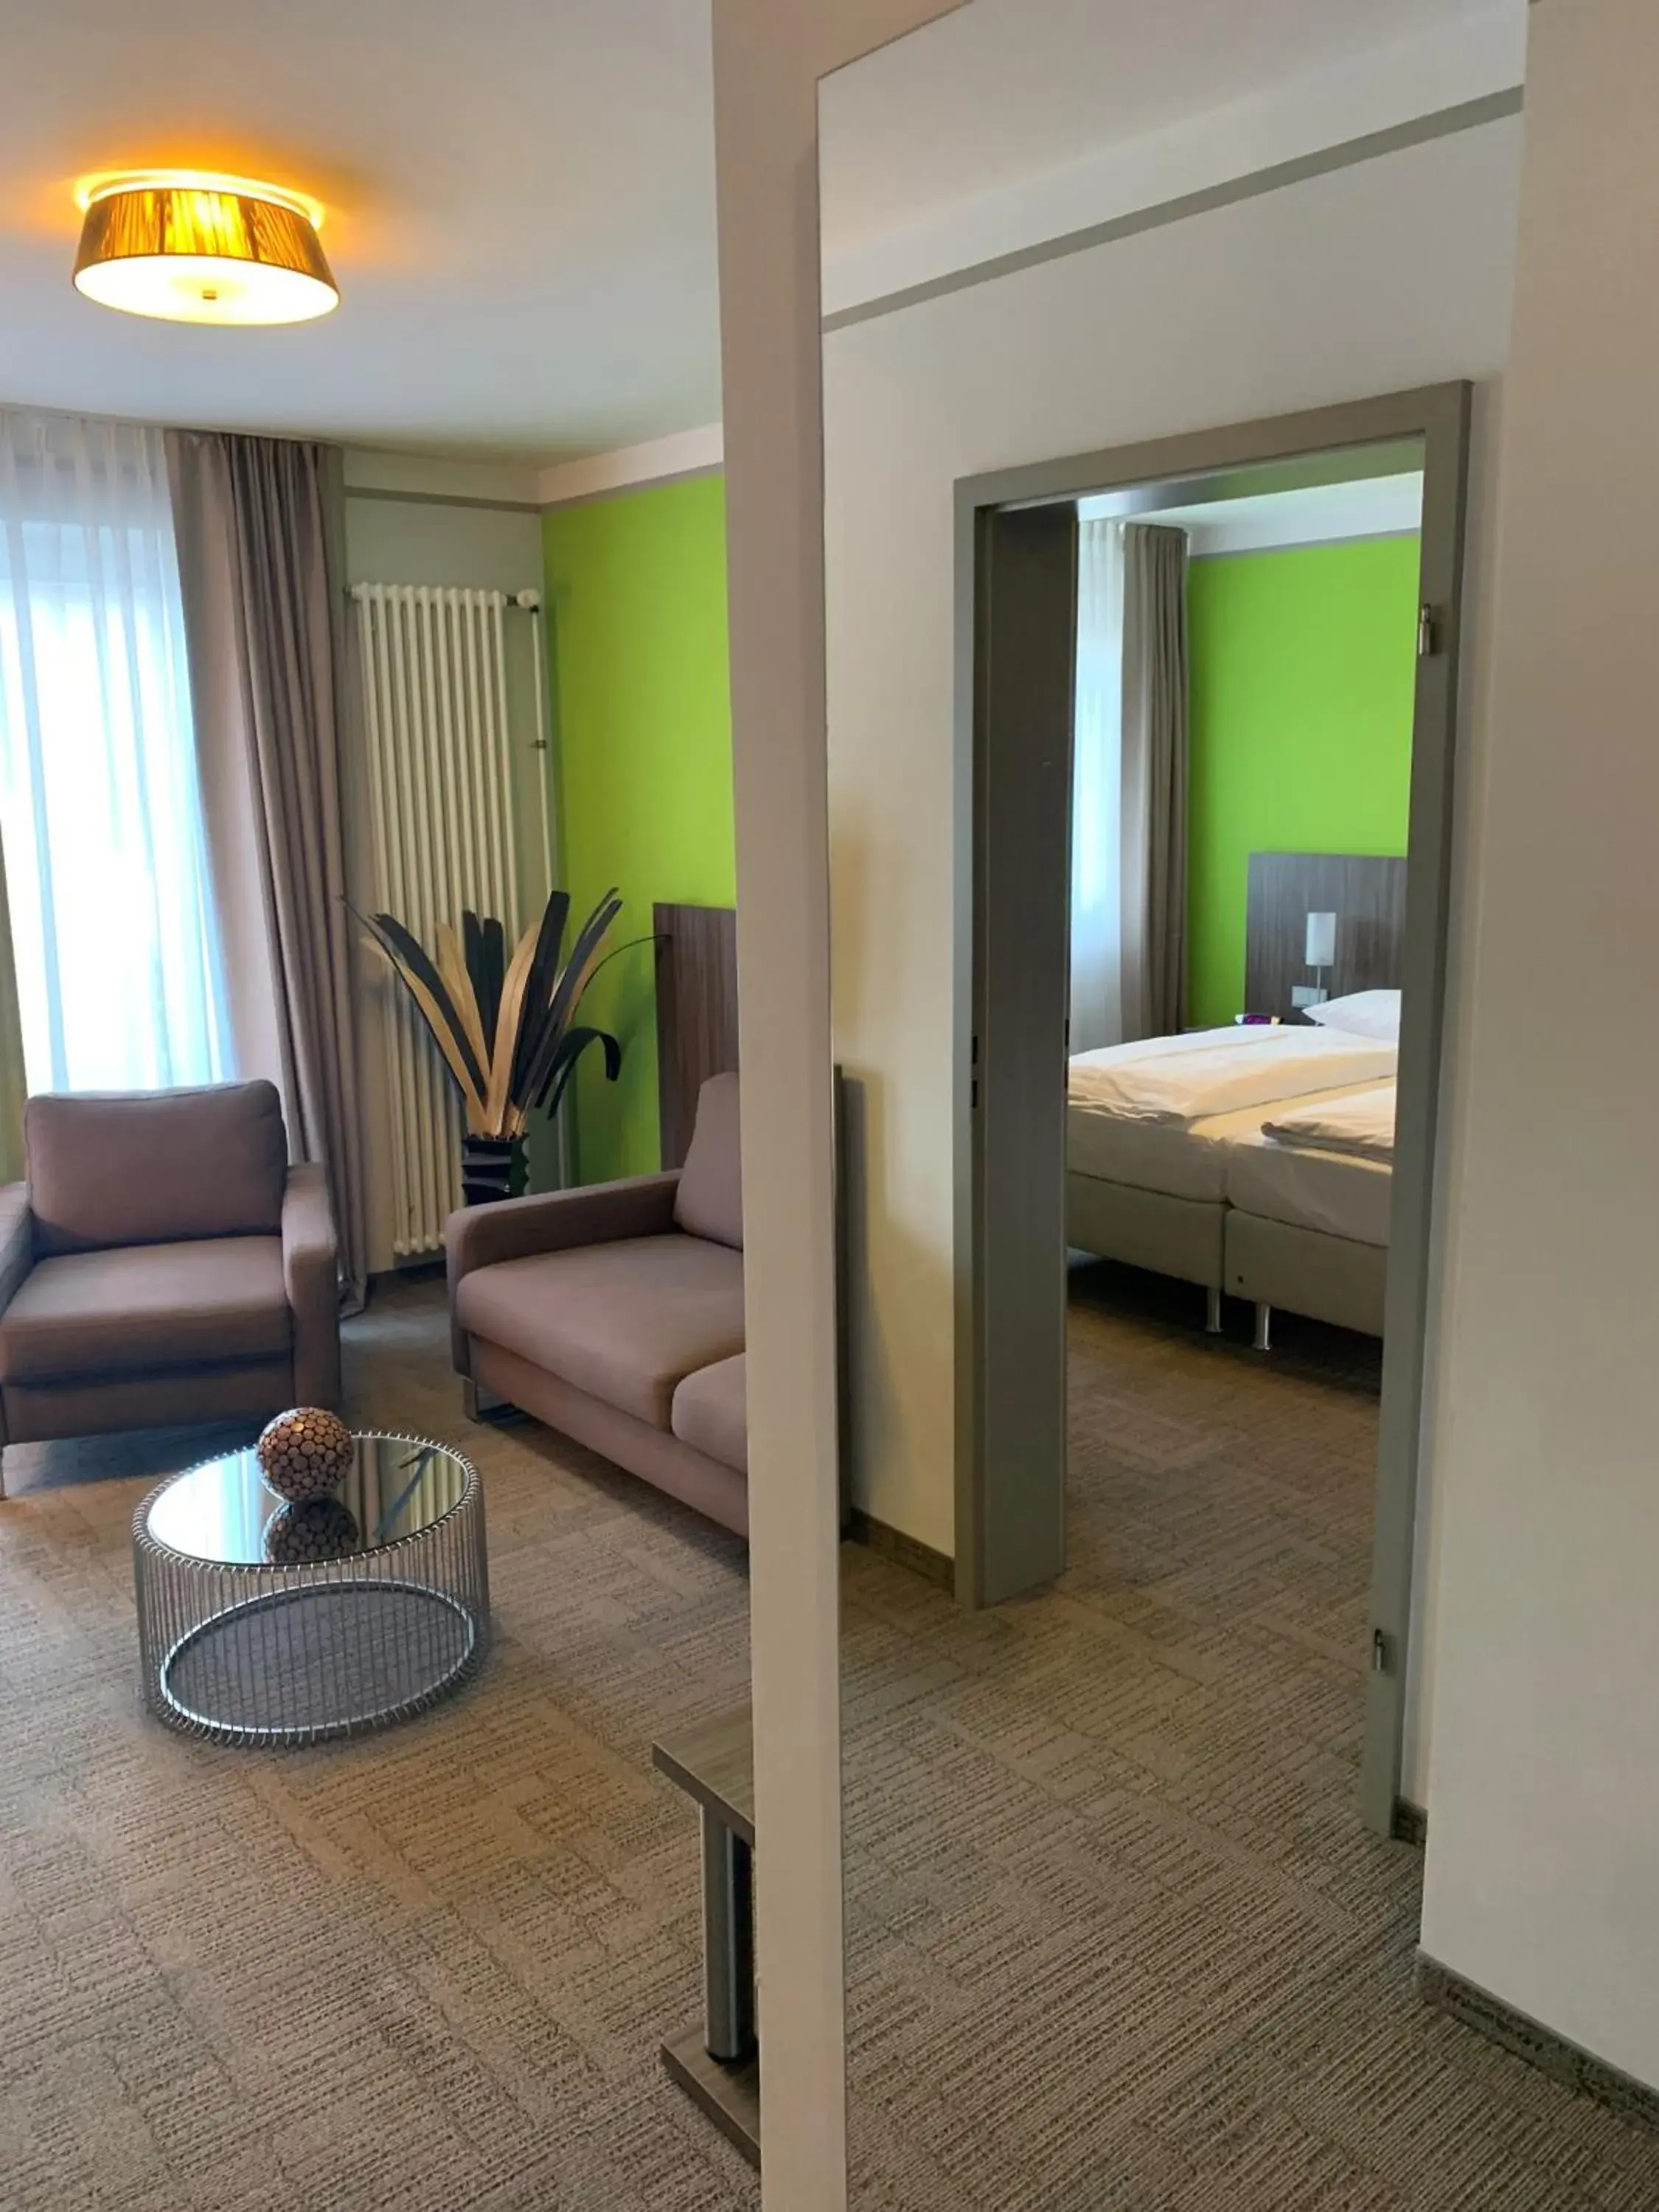 Bed in Hotel Ambiente Walldorf